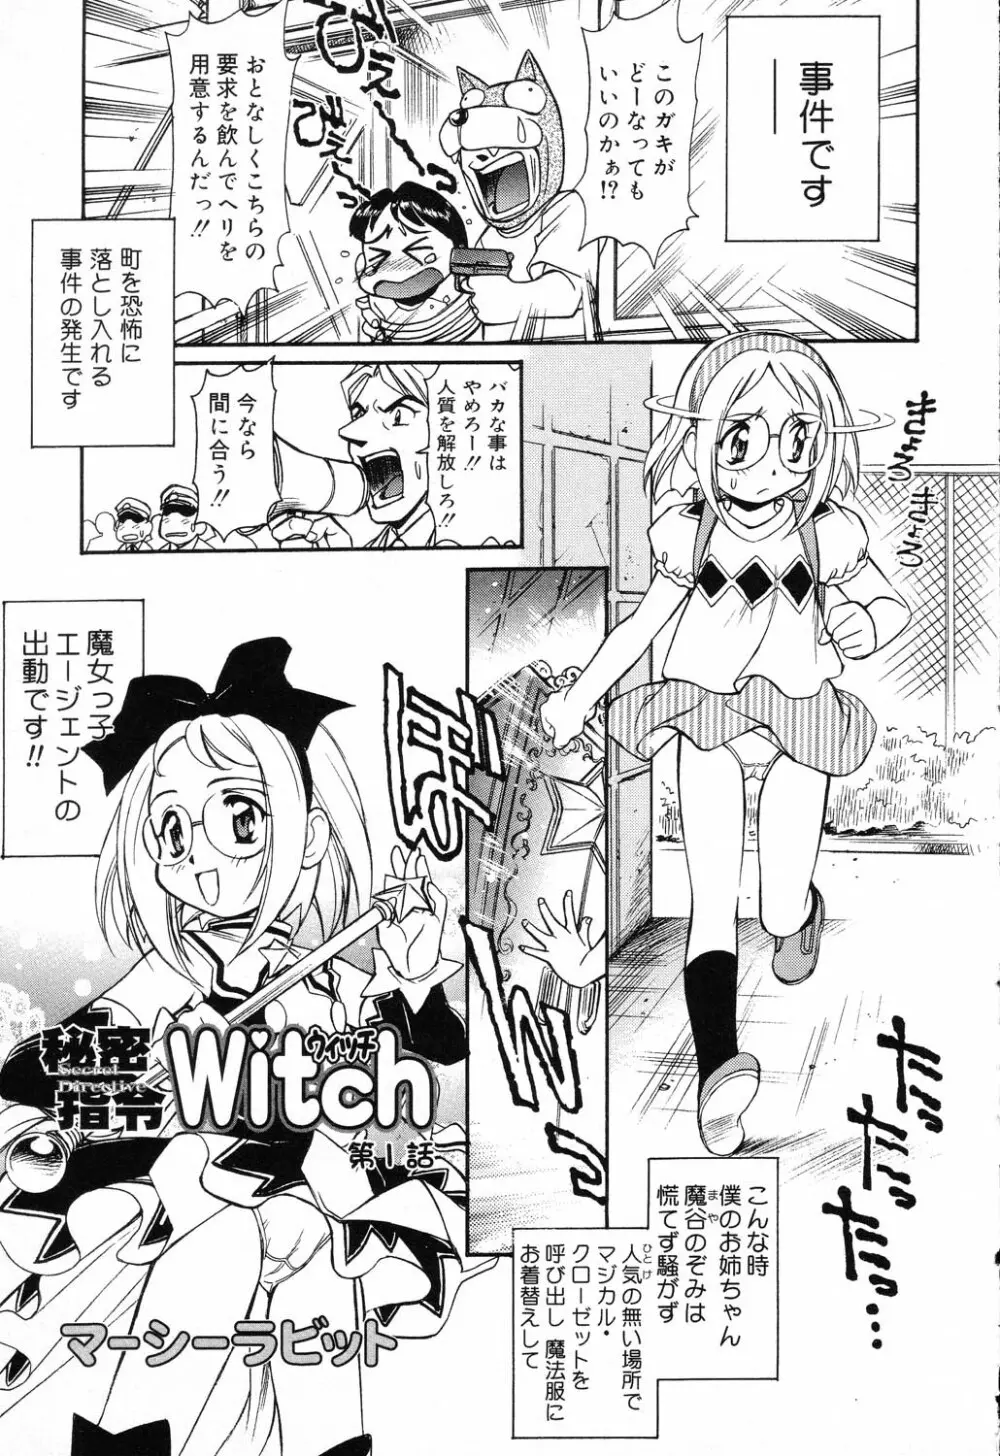 X Mitsu Shirei Witch 1-9 67ページ